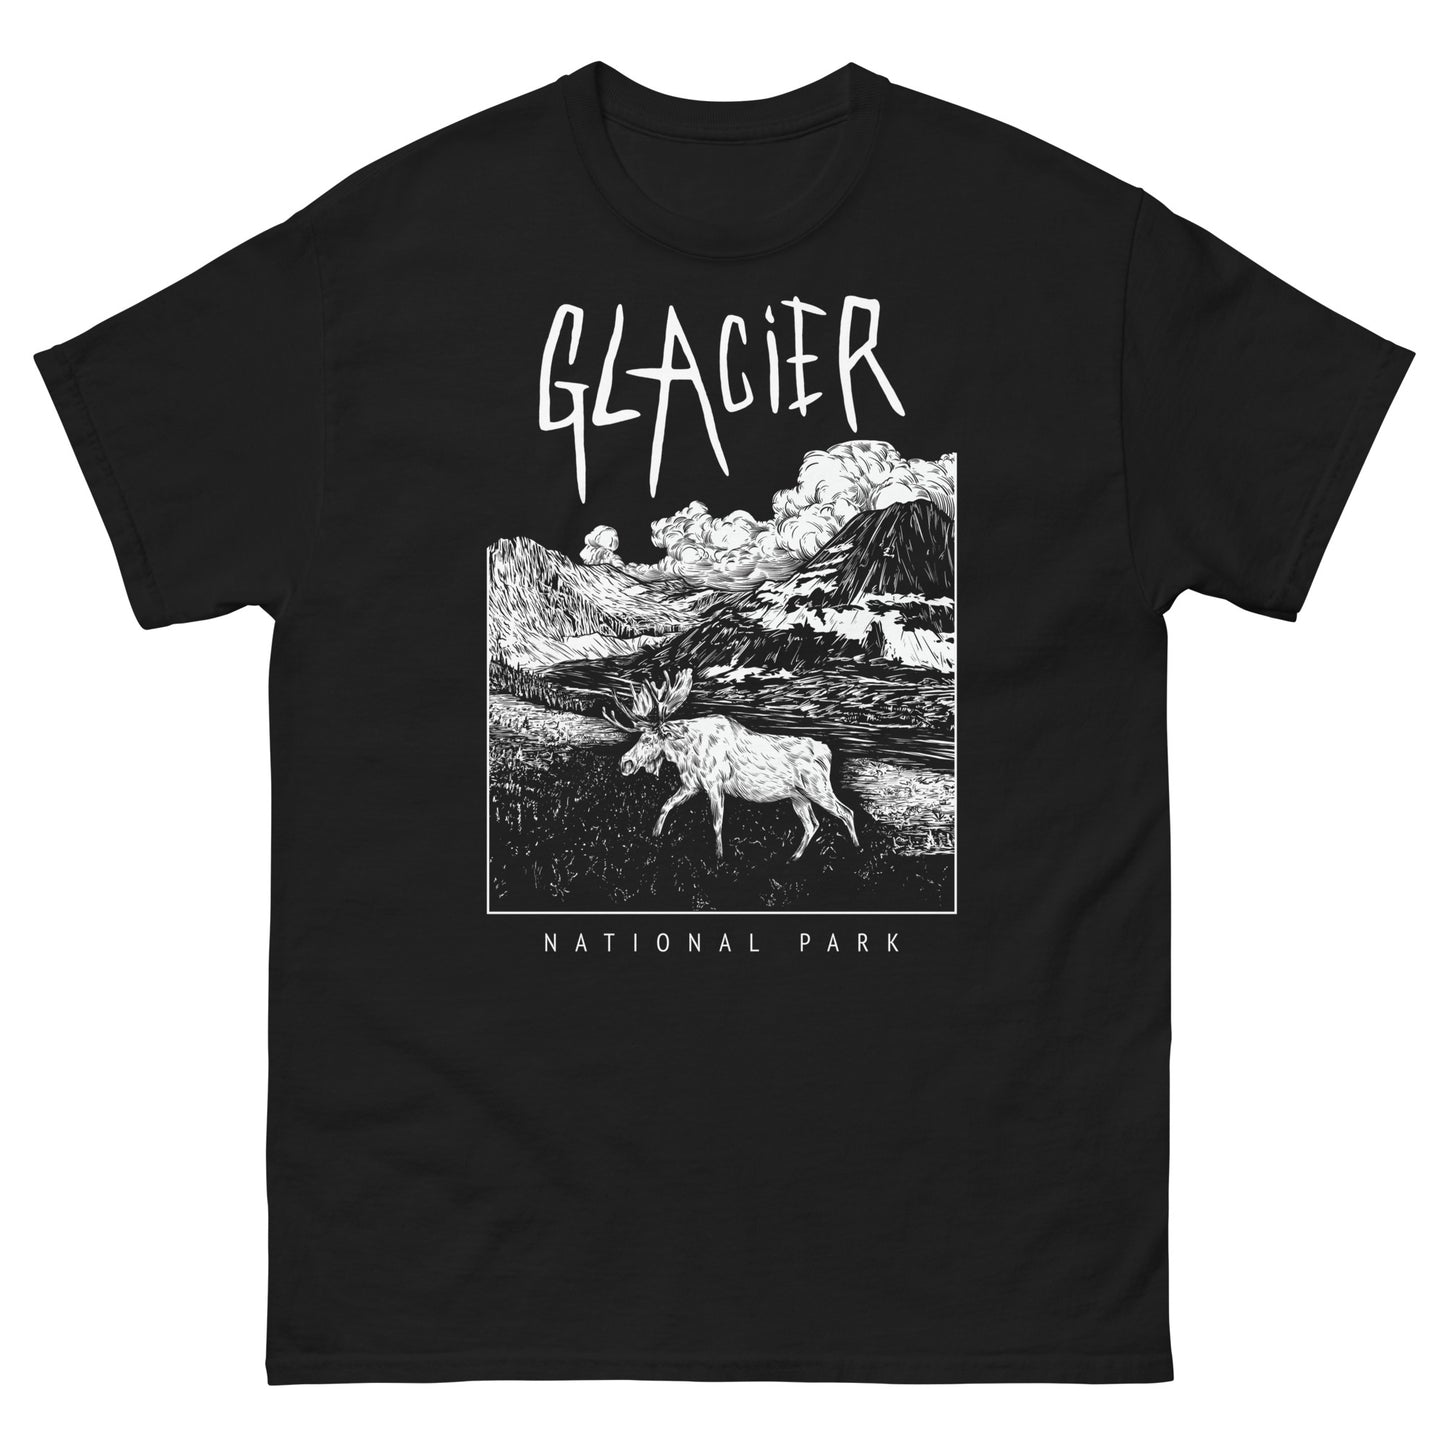 Glacier National Park Short Sleeve Black Death Metal T-Shirt